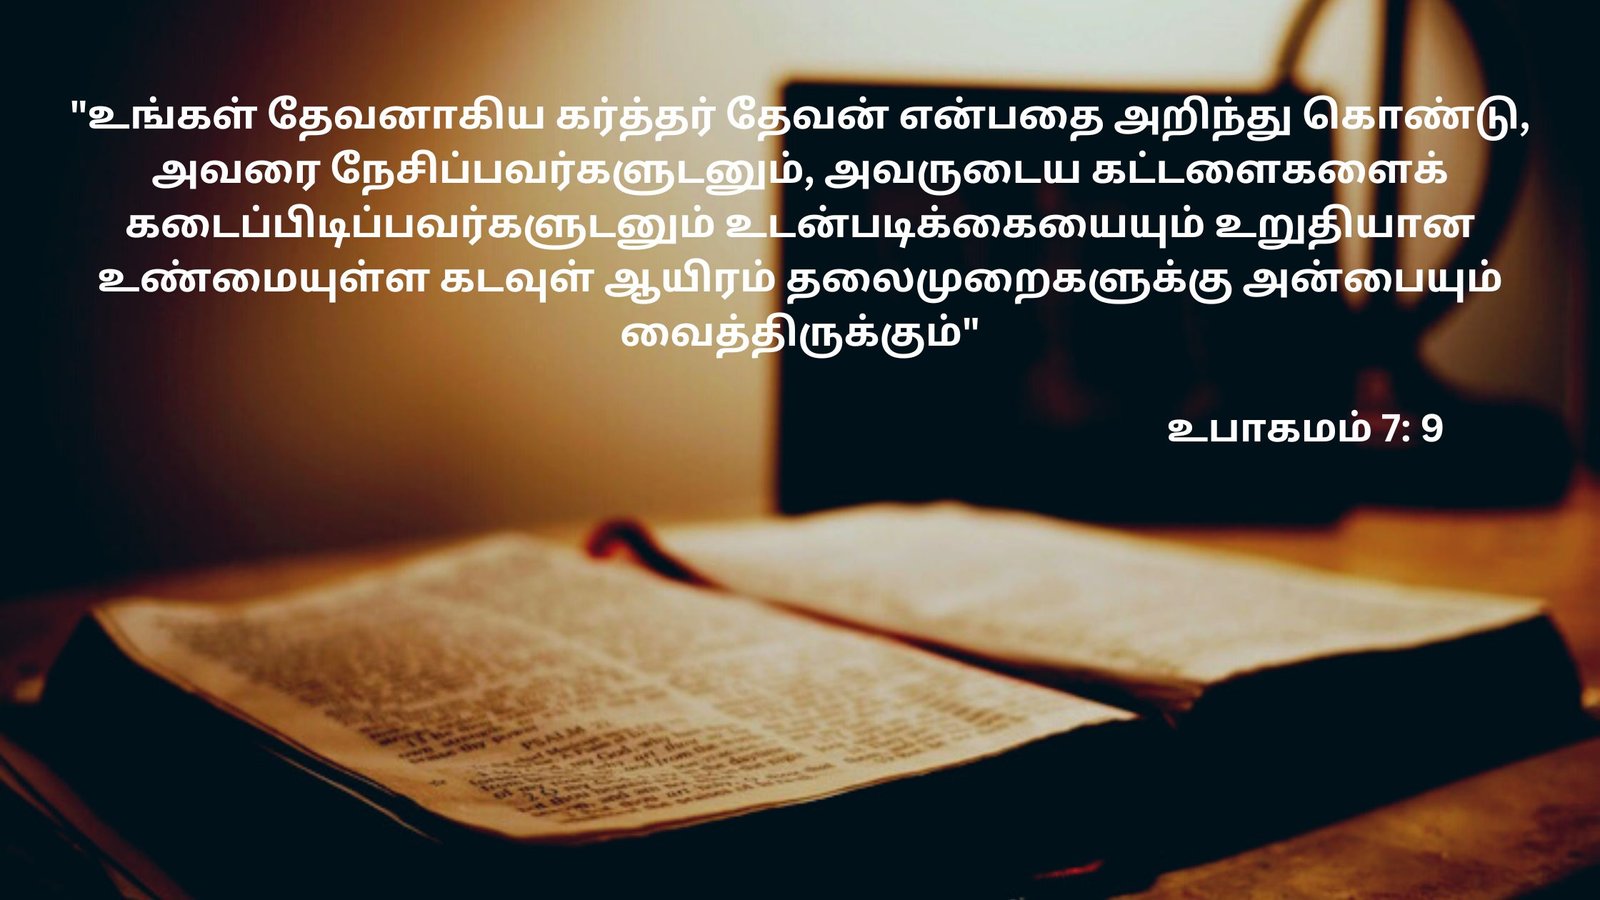 Bible verses in tamil